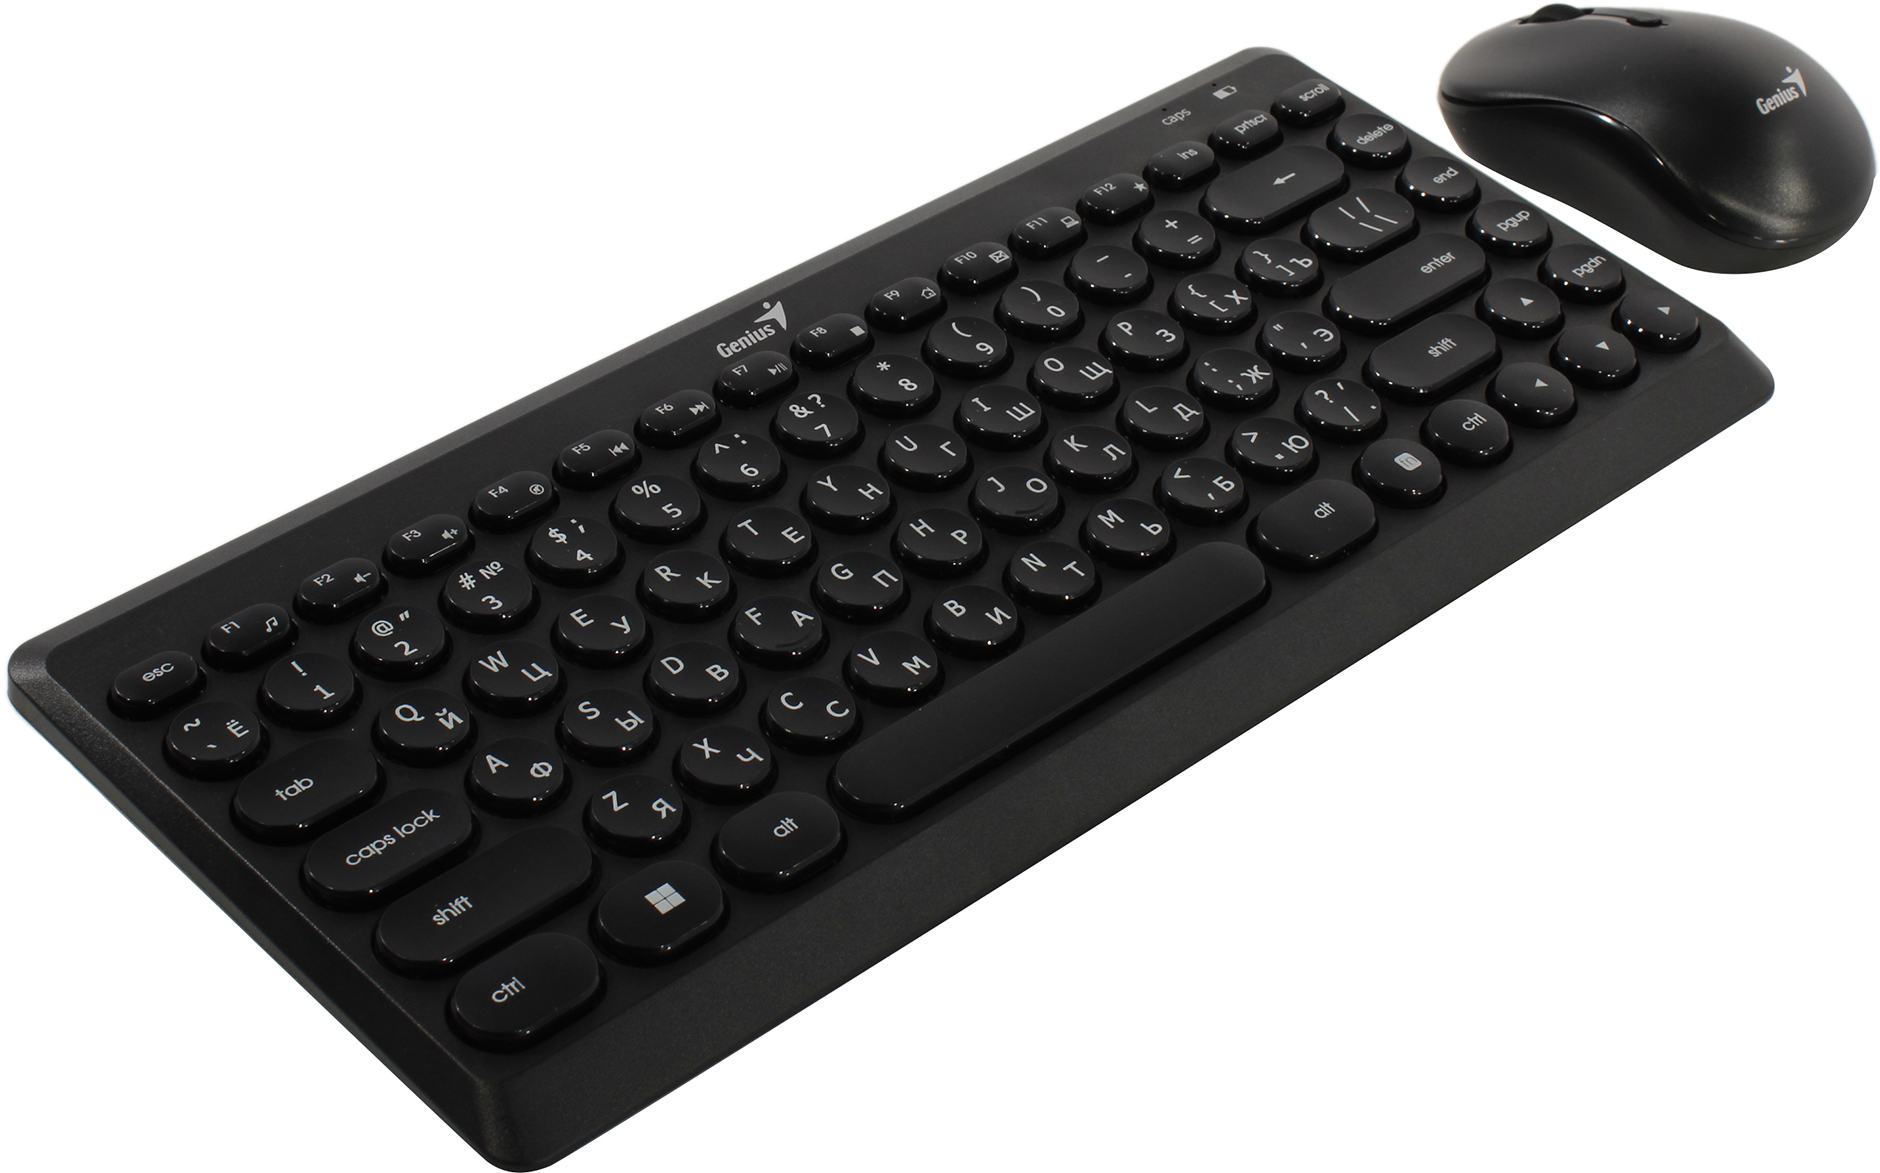 Клавиатура + мышь Genius LuxeMate Q8000, беспроводная, USB, черный (31340013402)